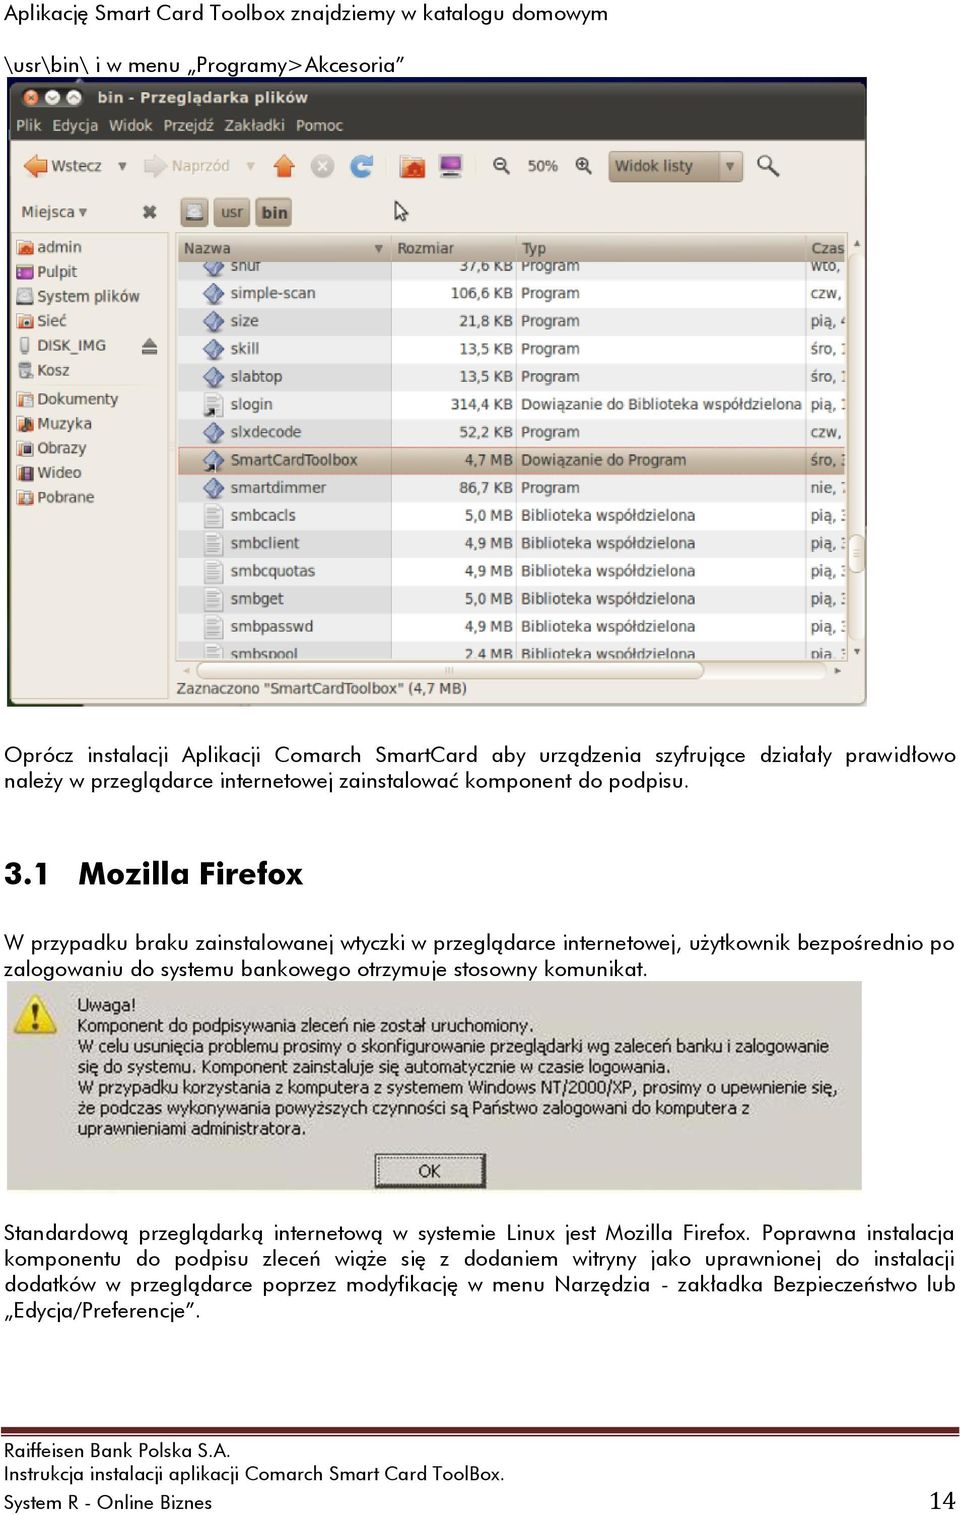 1 Mozilla Firefox W przypadku braku zainstalowanej wtyczki w przeglądarce internetowej, użytkownik bezpośrednio po zalogowaniu do systemu bankowego otrzymuje stosowny komunikat.